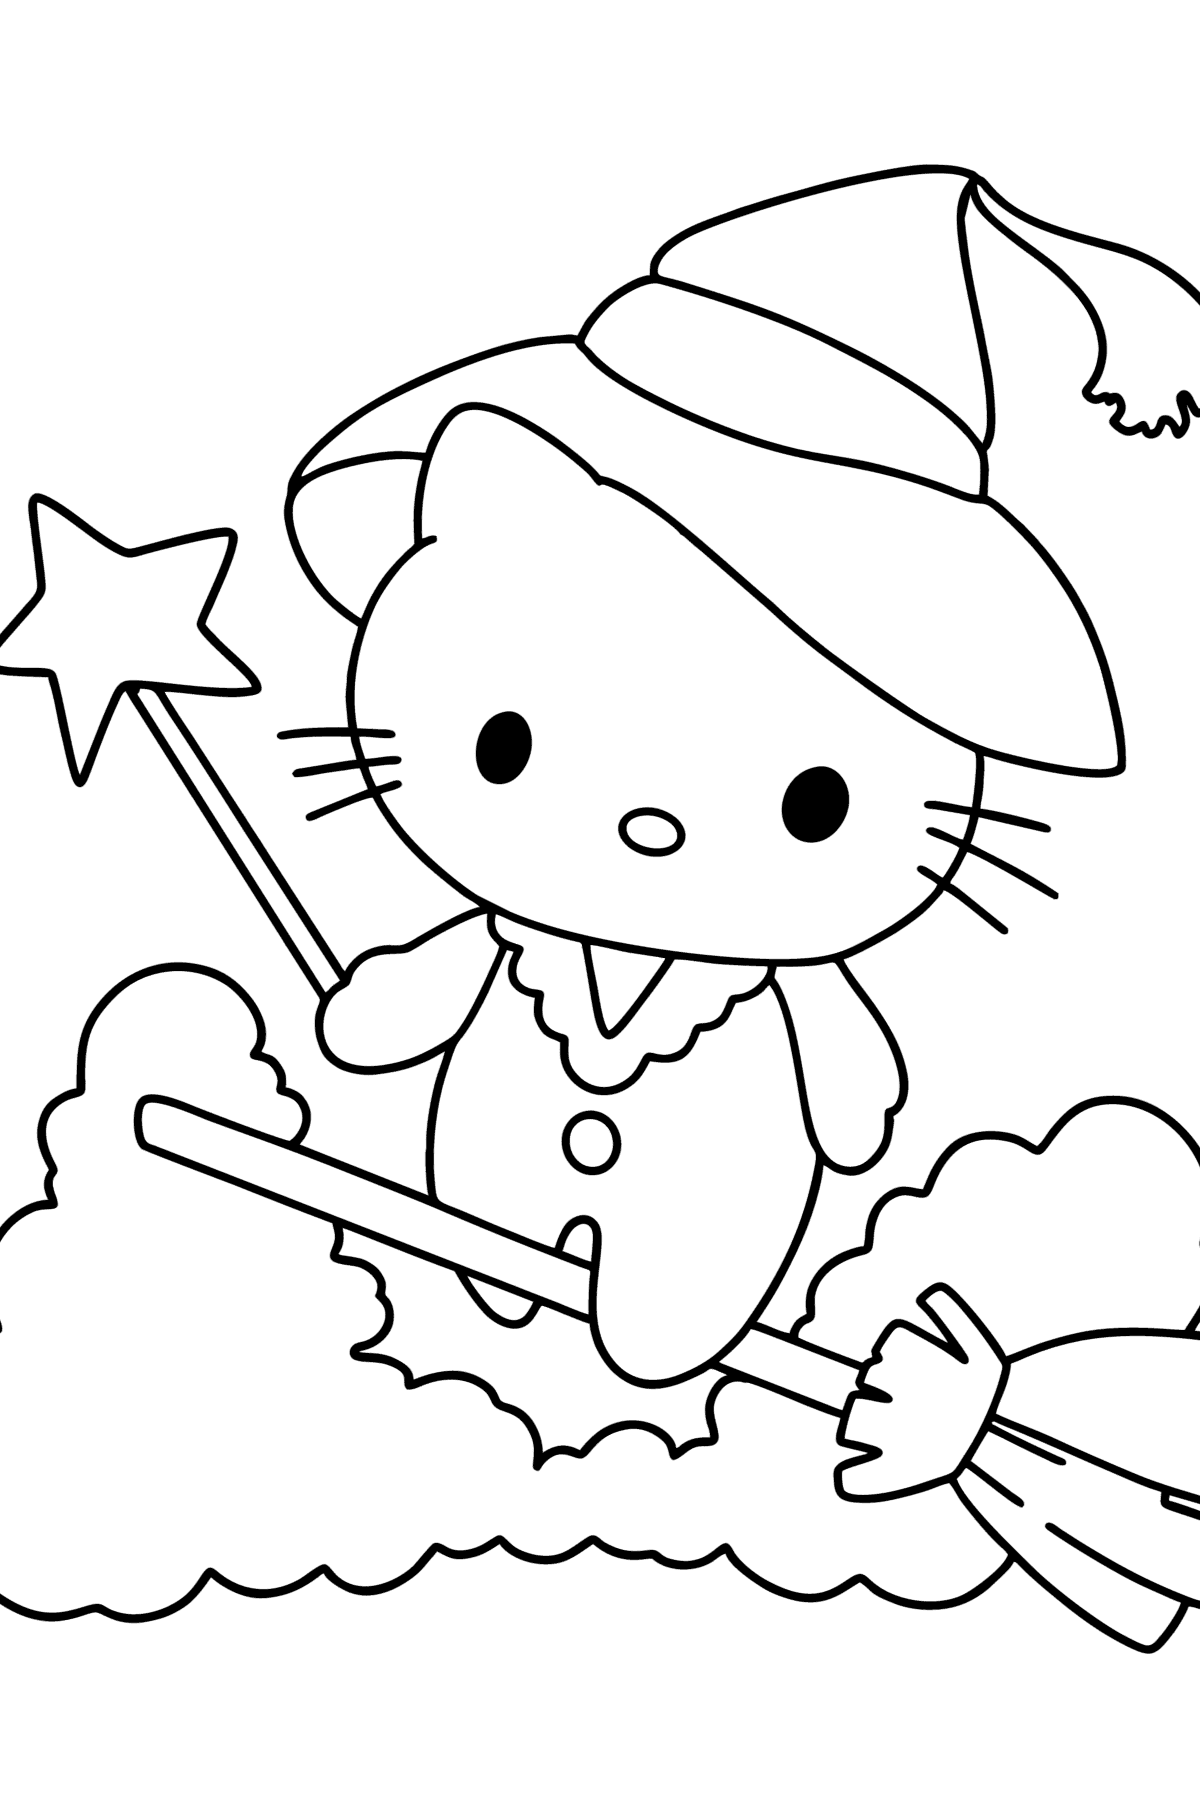 Dibujo de Hello Kitty Halloween para colorear - Dibujos para Colorear para Niños